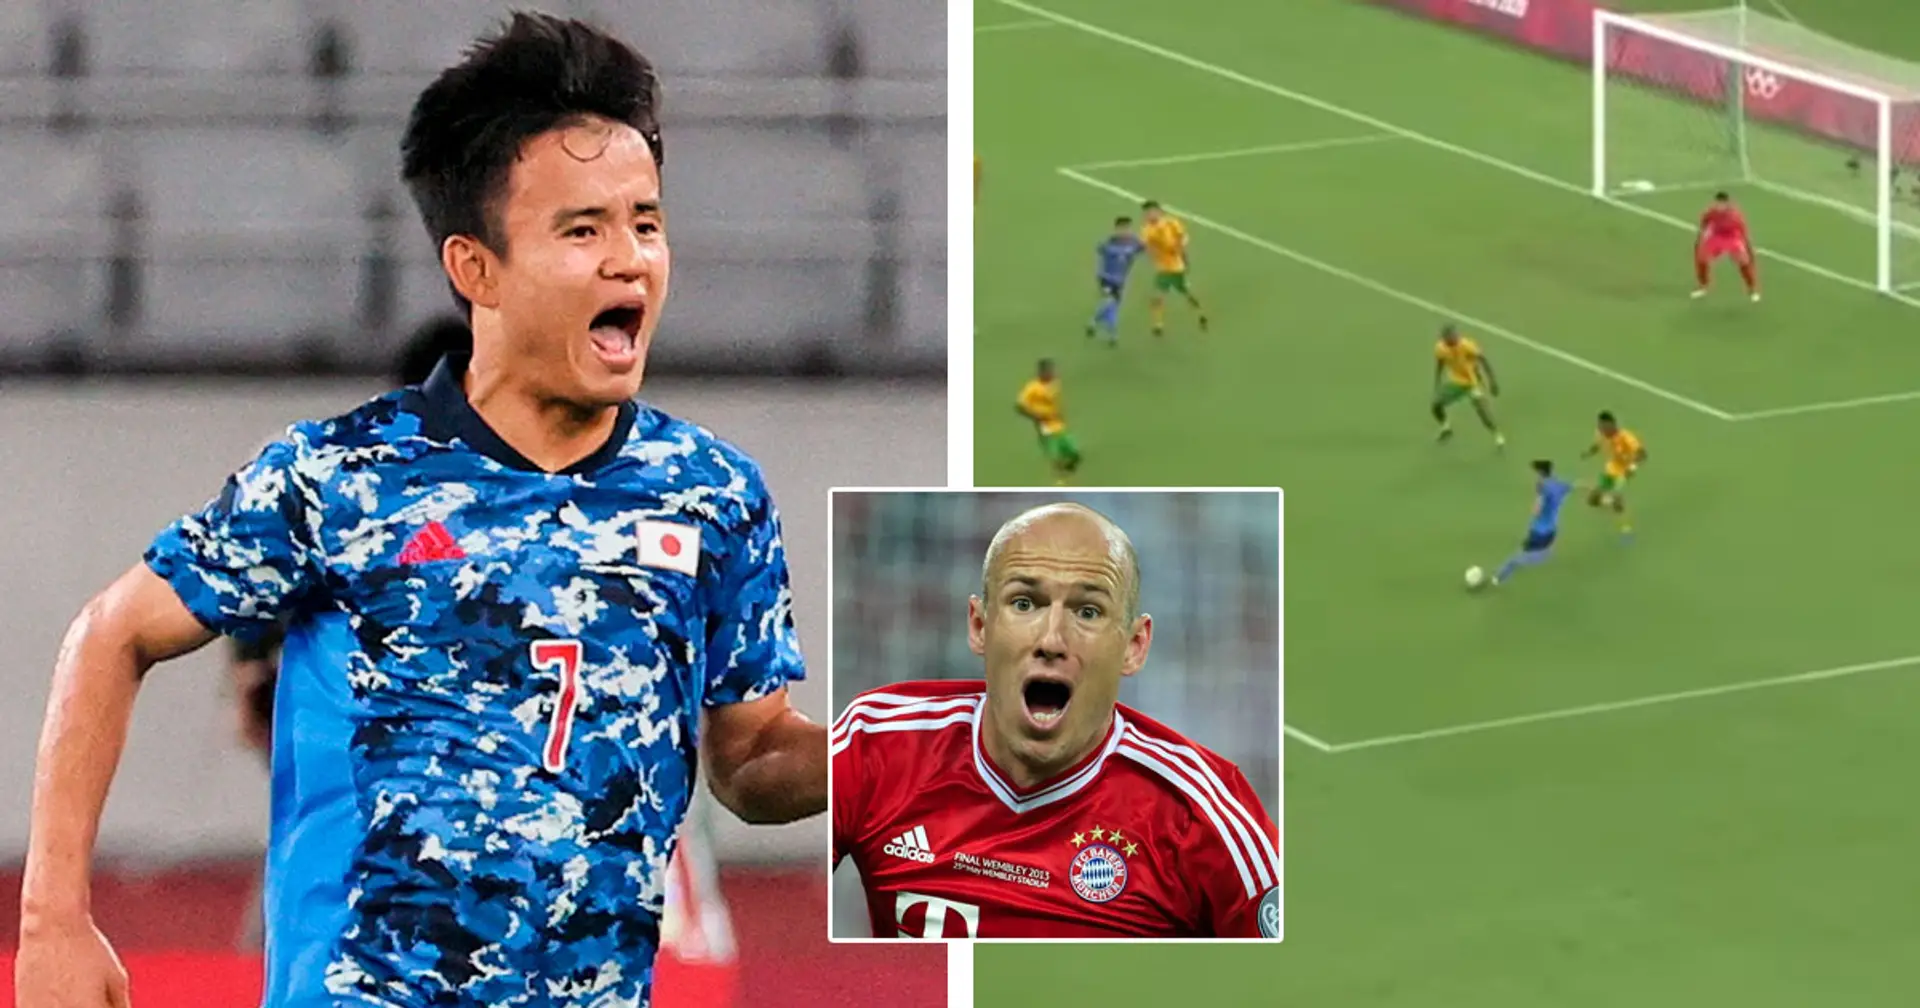 Kubo remporte le match avec le Japon après un but parfait à la Robben